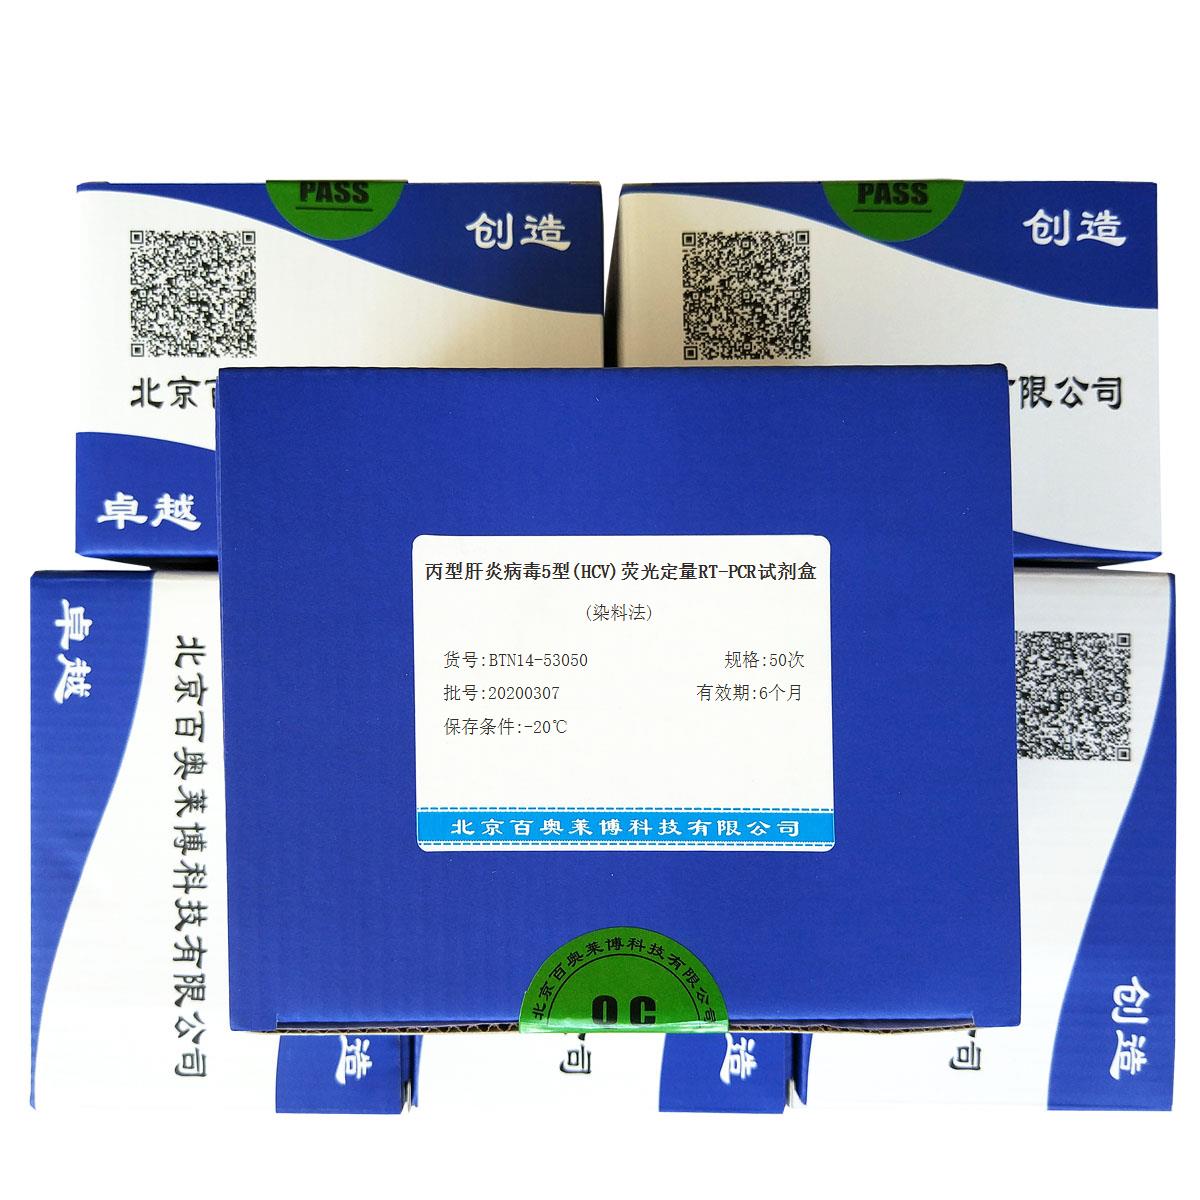 丙型肝炎病毒5型(HCV)荧光定量RT-PCR试剂盒(染料法)